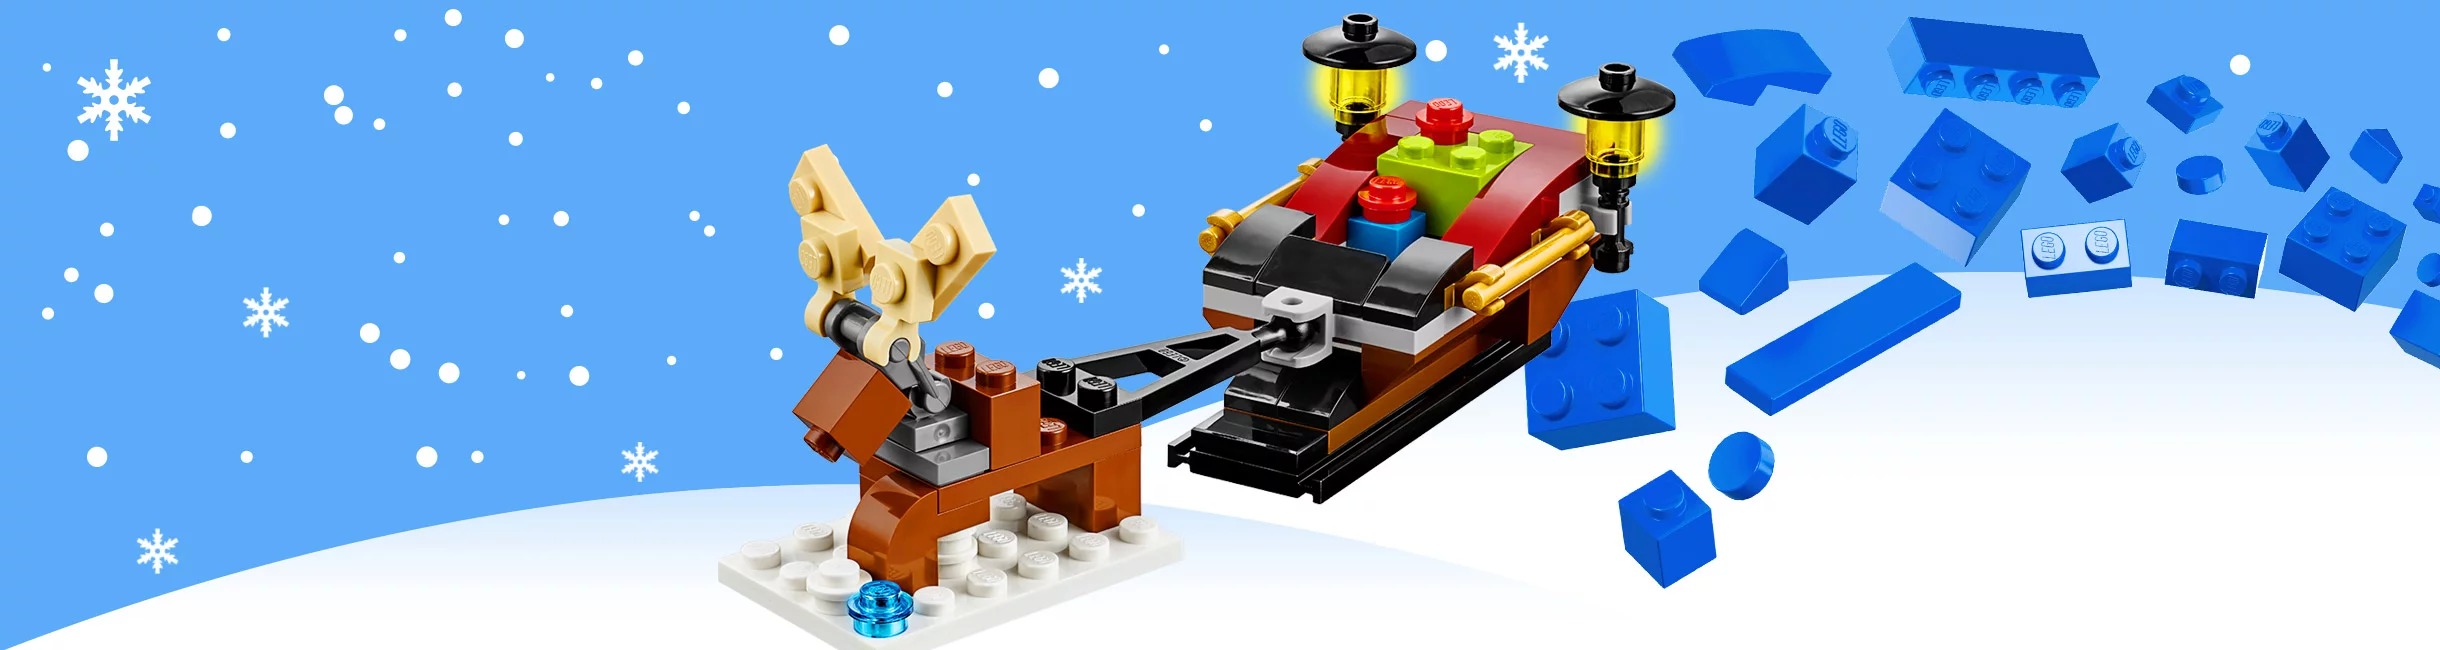 Рекламная акция LEGO (Лего) «Волшебные саночки»